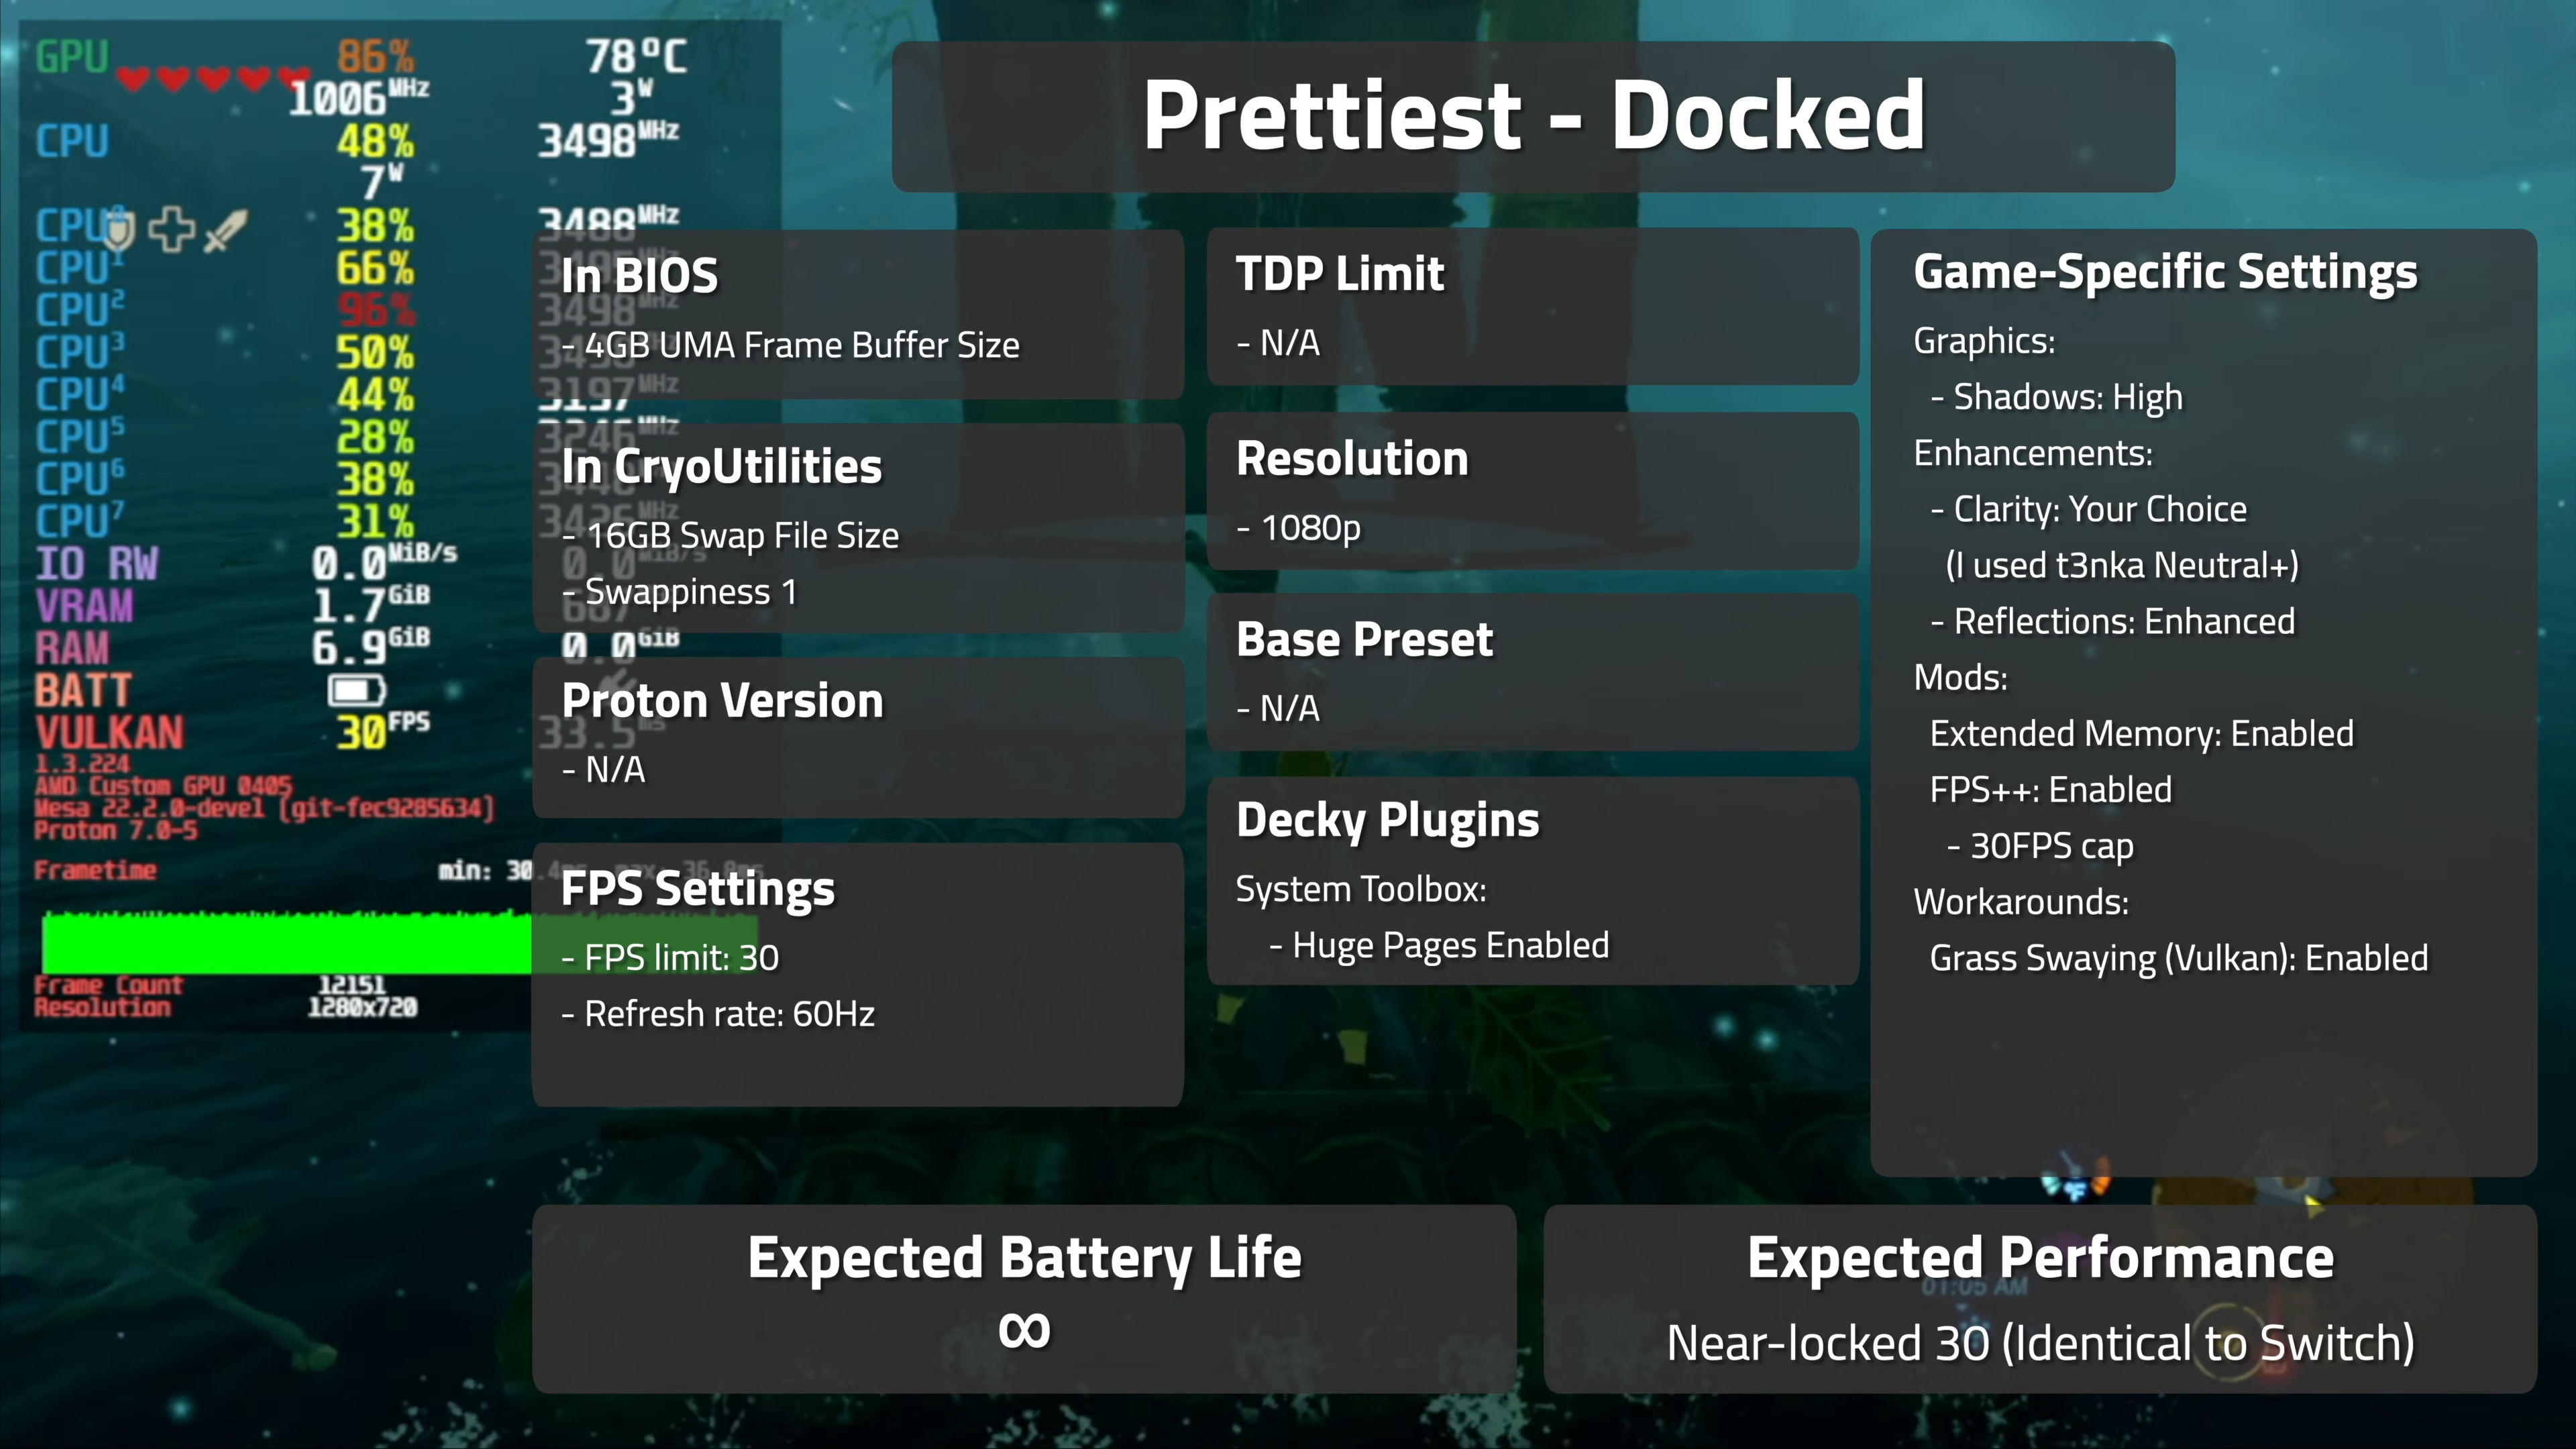 The Legend of Zelda Wind Waker HD on Steam Deck - best settings guide